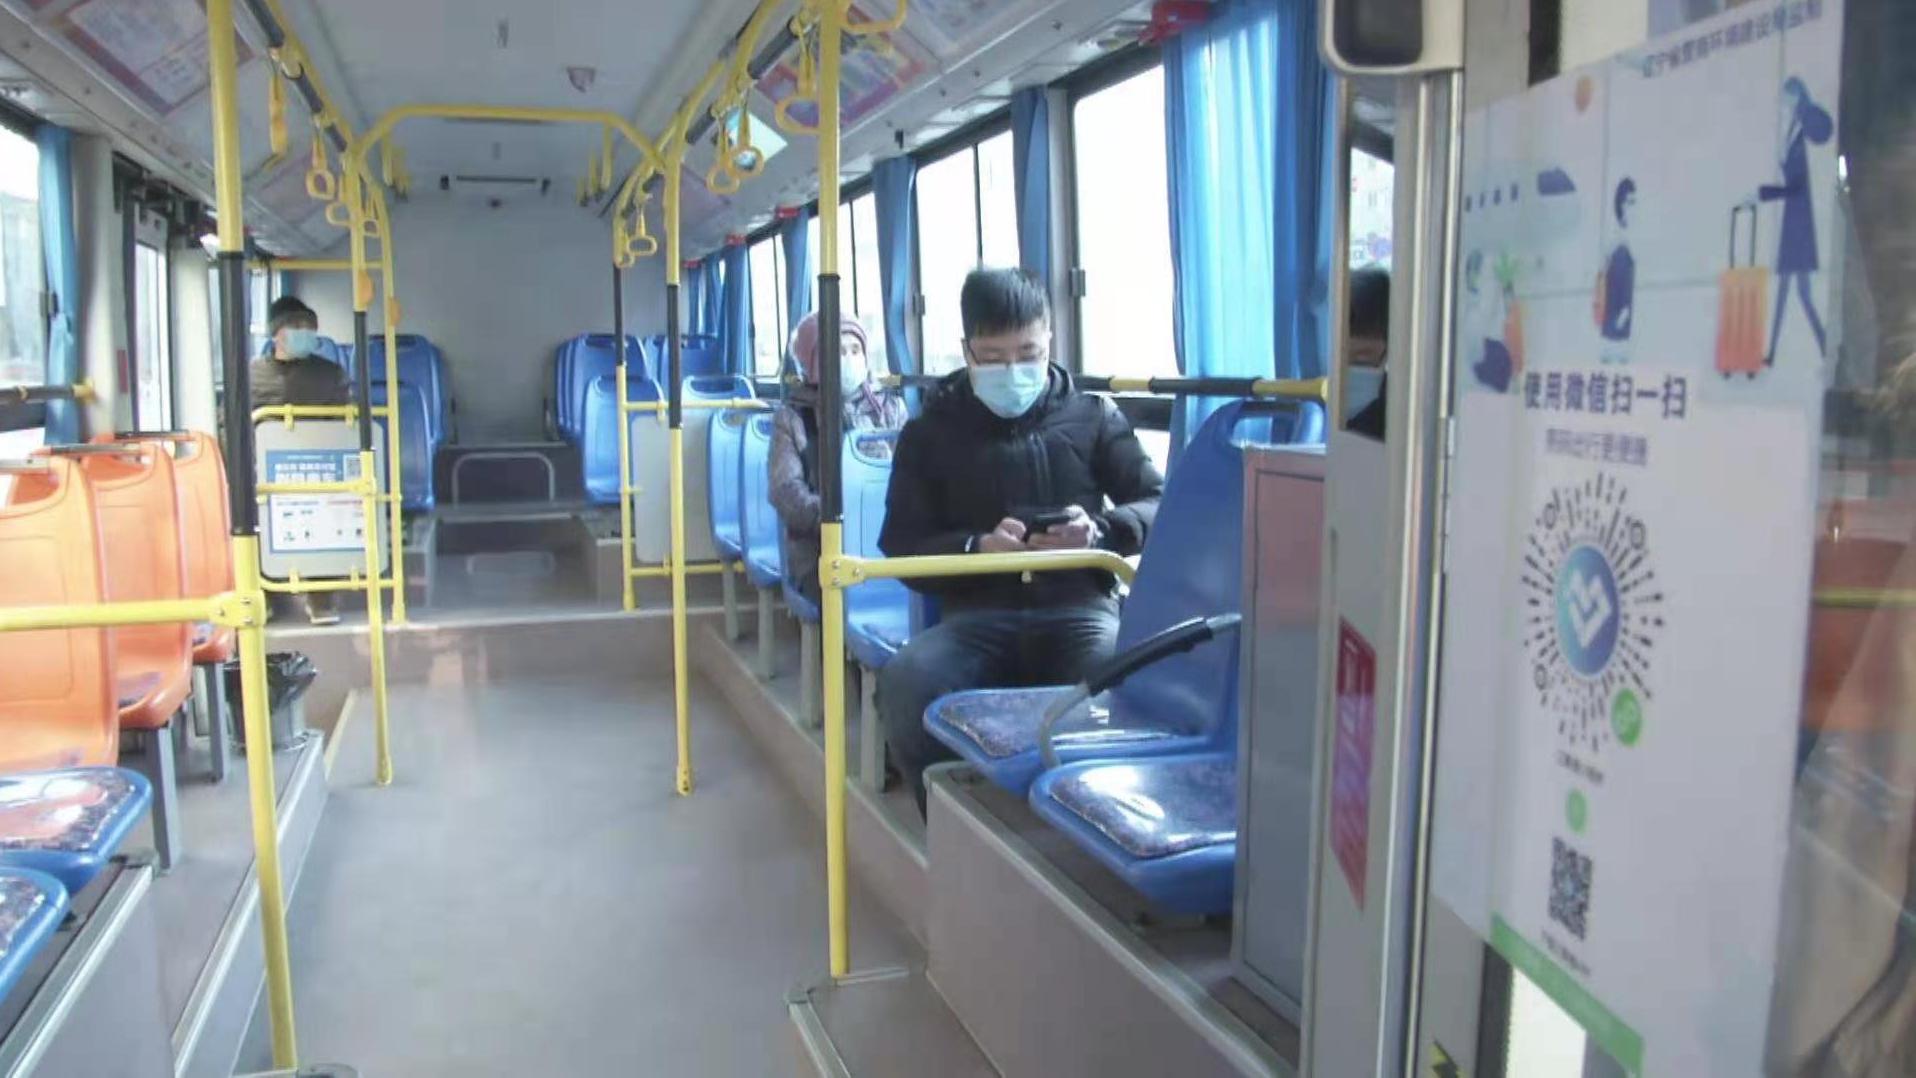 即日起沈阳地铁、公交、道路客运车辆的额定载客量不超过75%